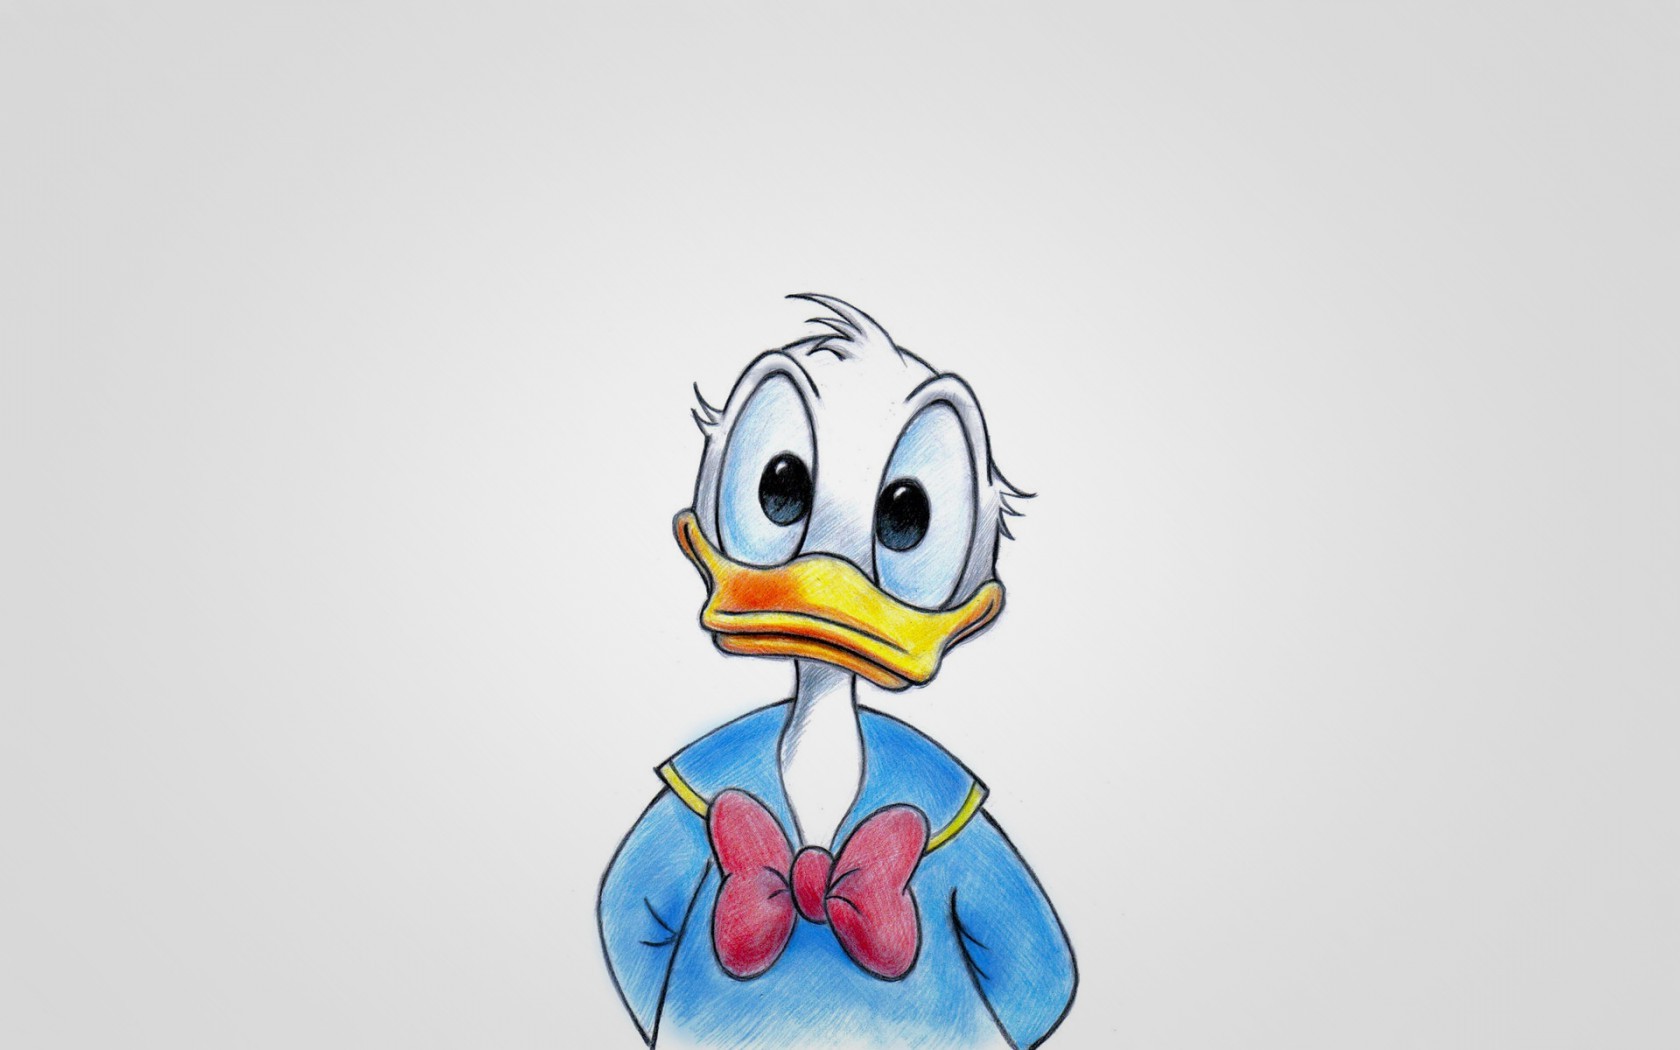 1080p Donald Duck Wallpaper Hd - HD Wallpaper 